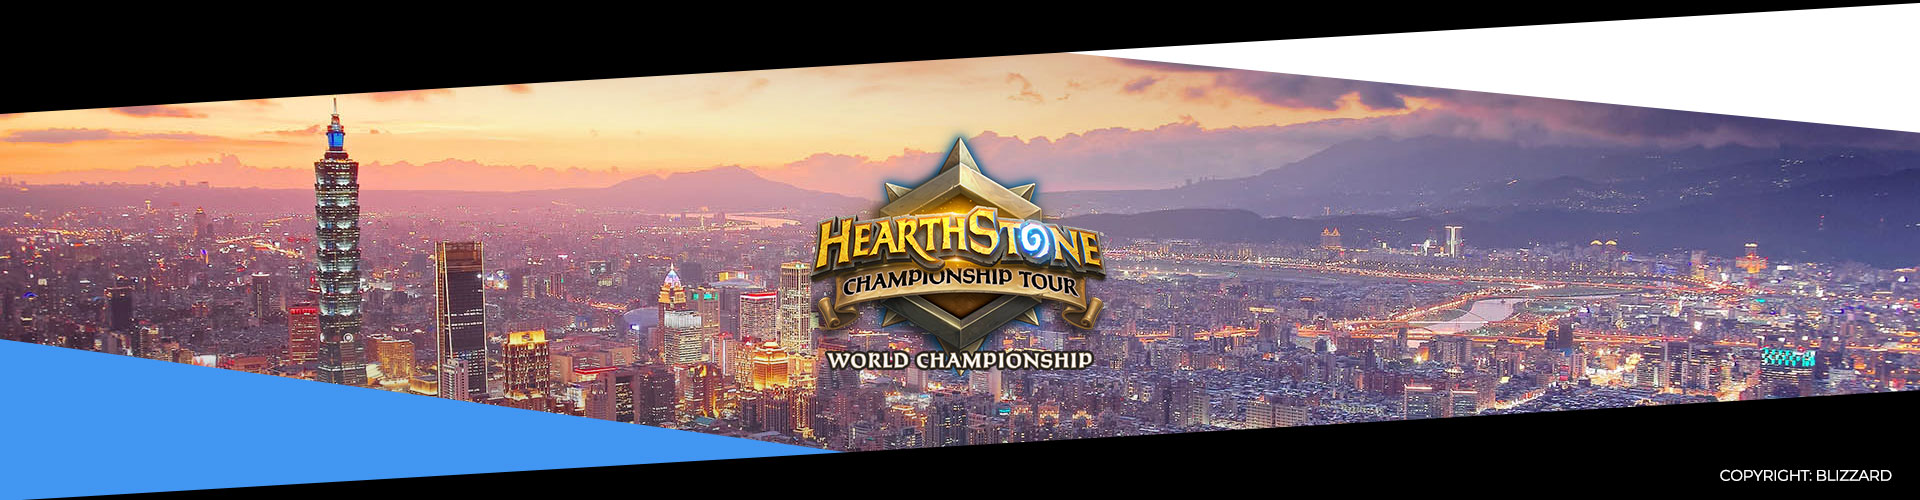 Hearthstonen maailmanmestaruuskisat 2019 alkavat huomenna